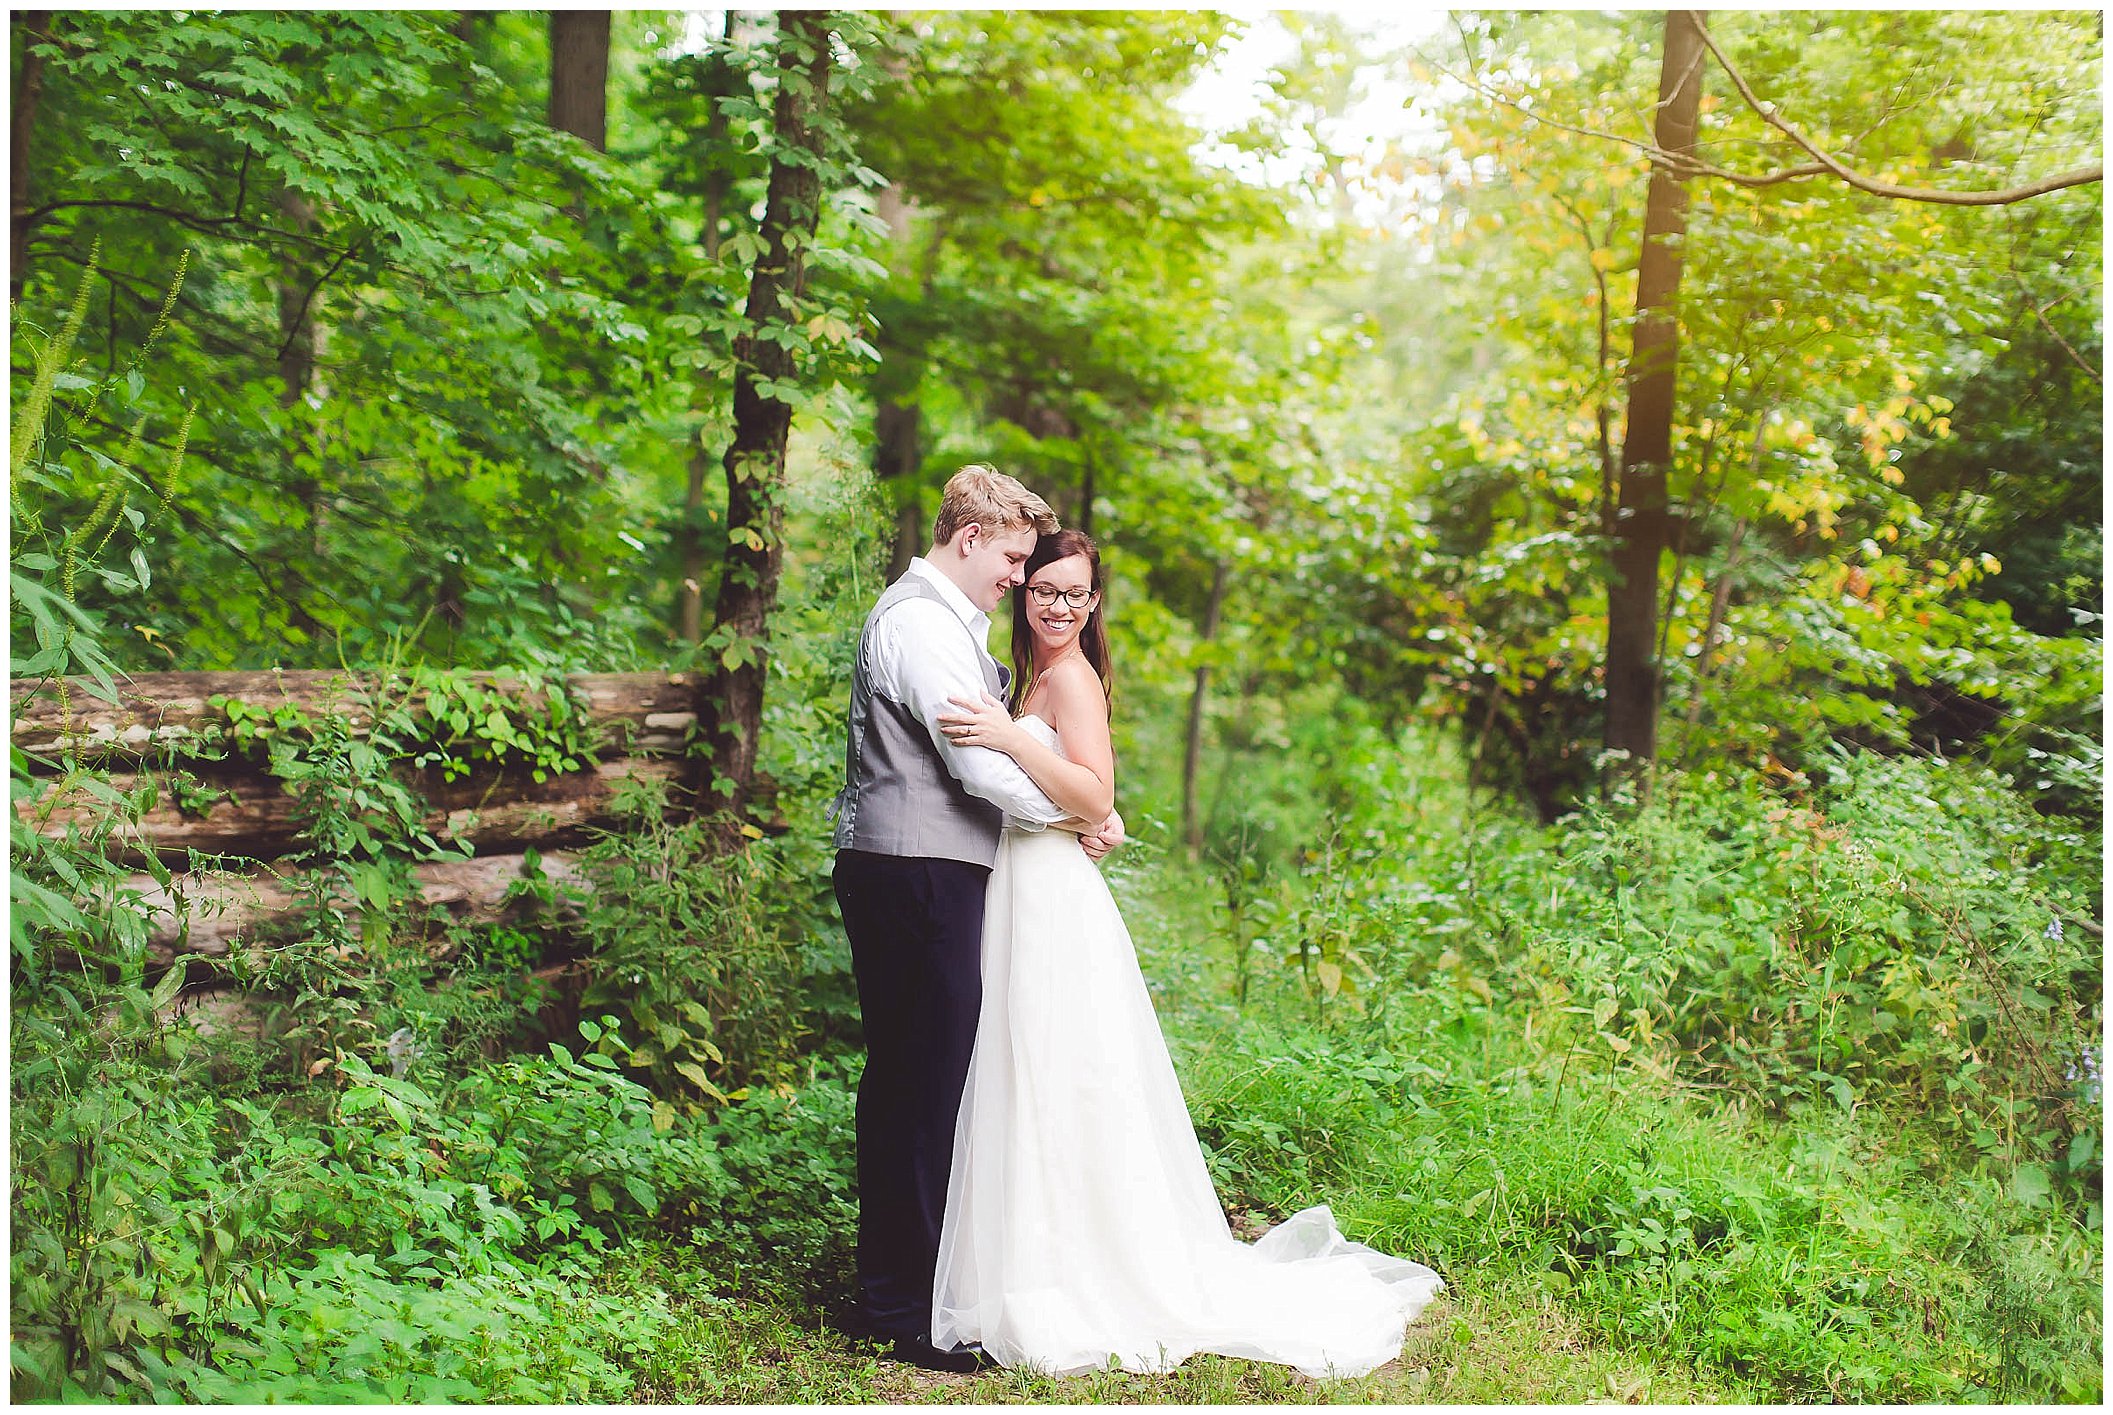 Stunning backyard wedding with twinkly lights, Fort Wayne Indiana Wedding Photographer_0041.jpg